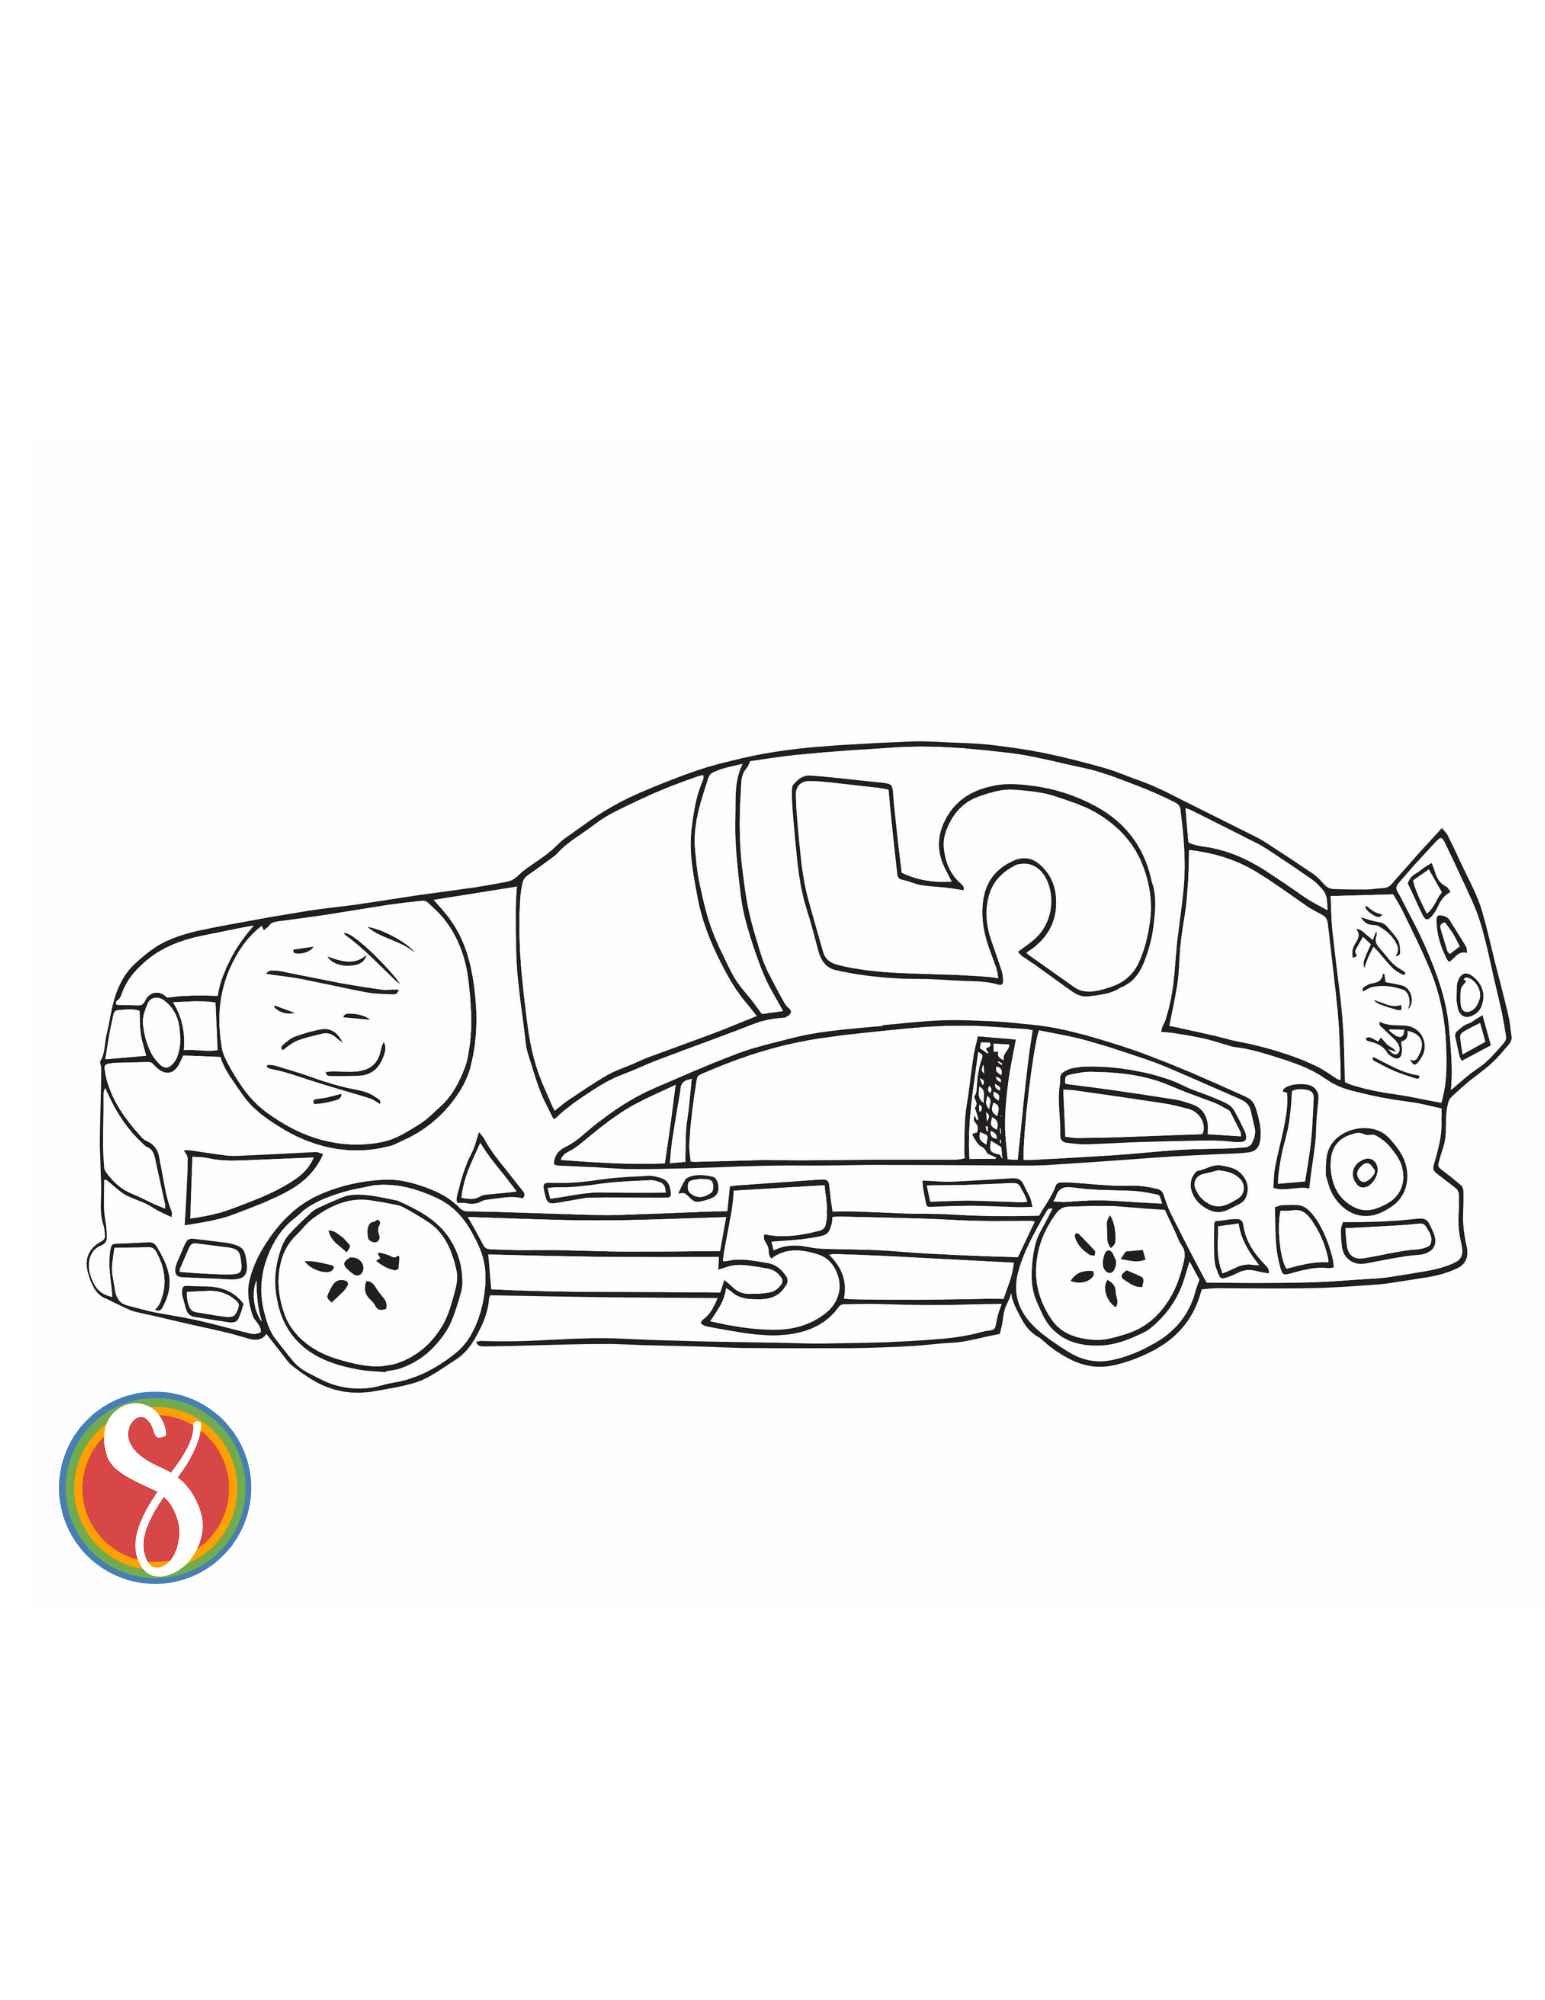 Free simple car coloring pages â stevie doodles